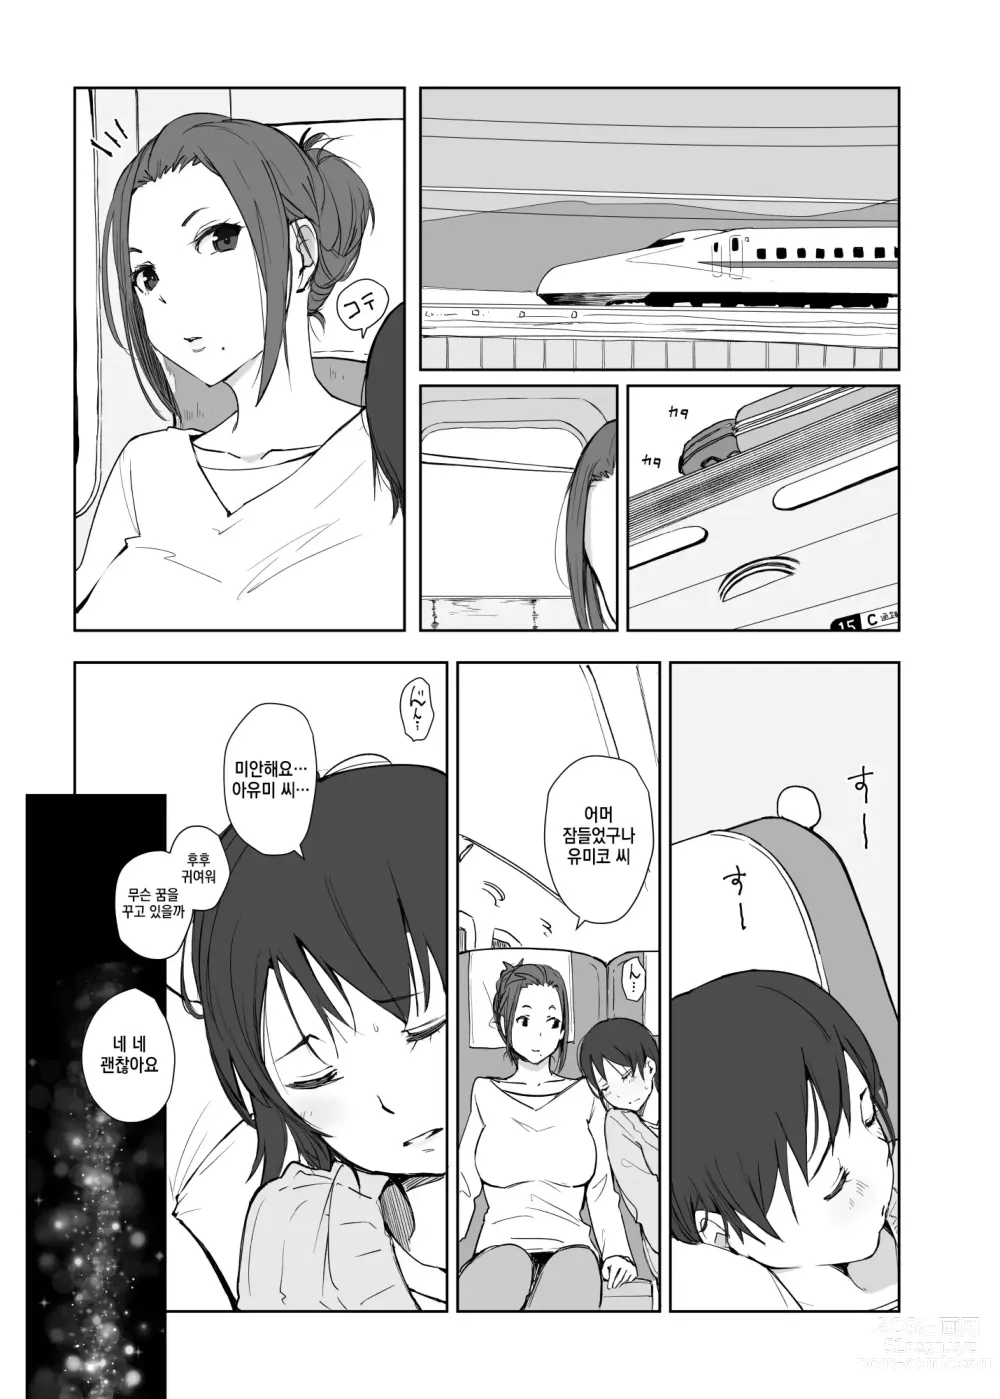 Page 2 of doujinshi 네토라레 당한 유부녀와 네토라레 당하는 유부녀 4